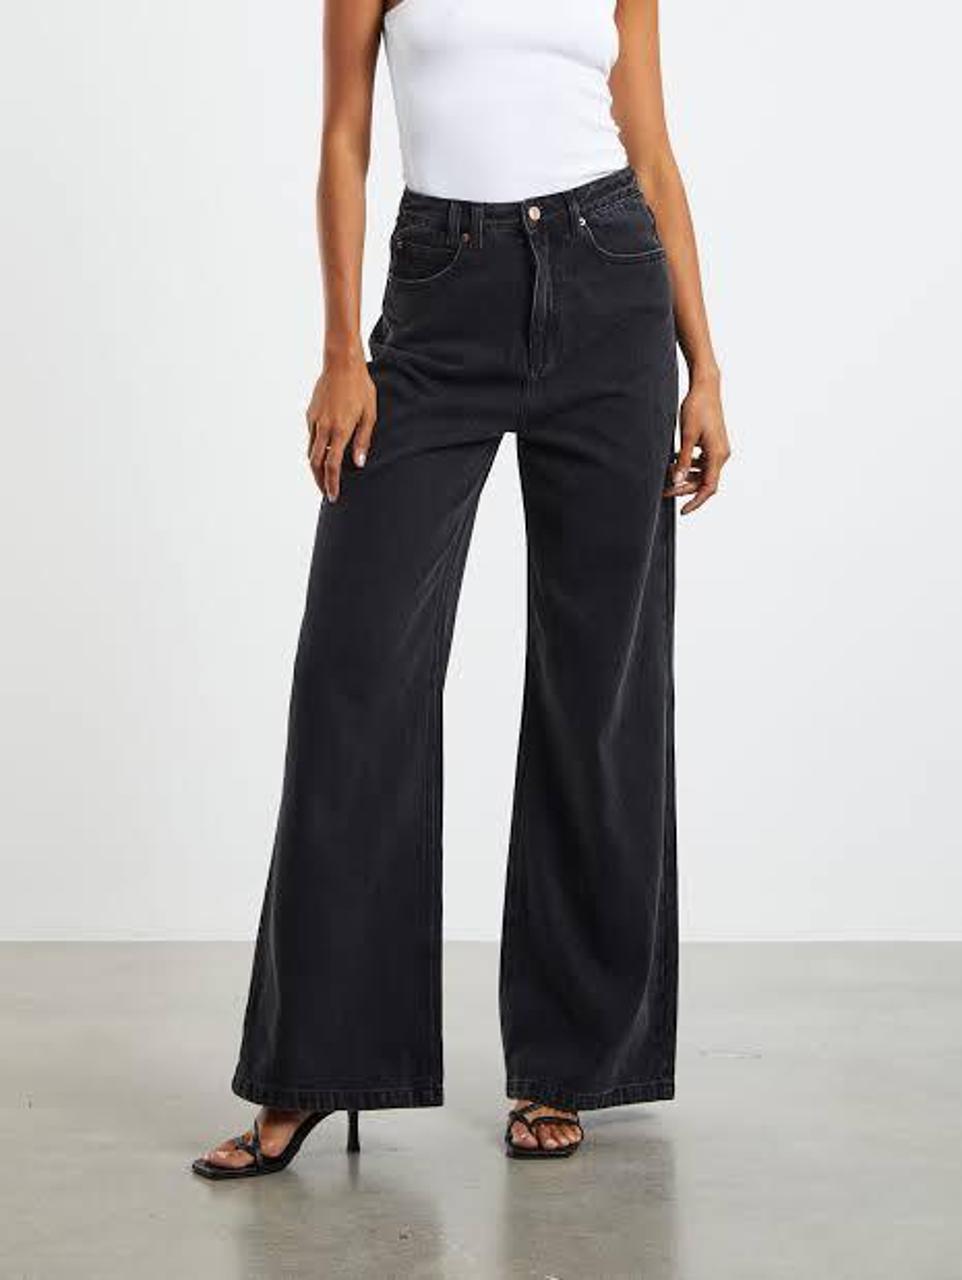 General Pants Co. - General Pants Flare Jeans on Designer Wardrobe